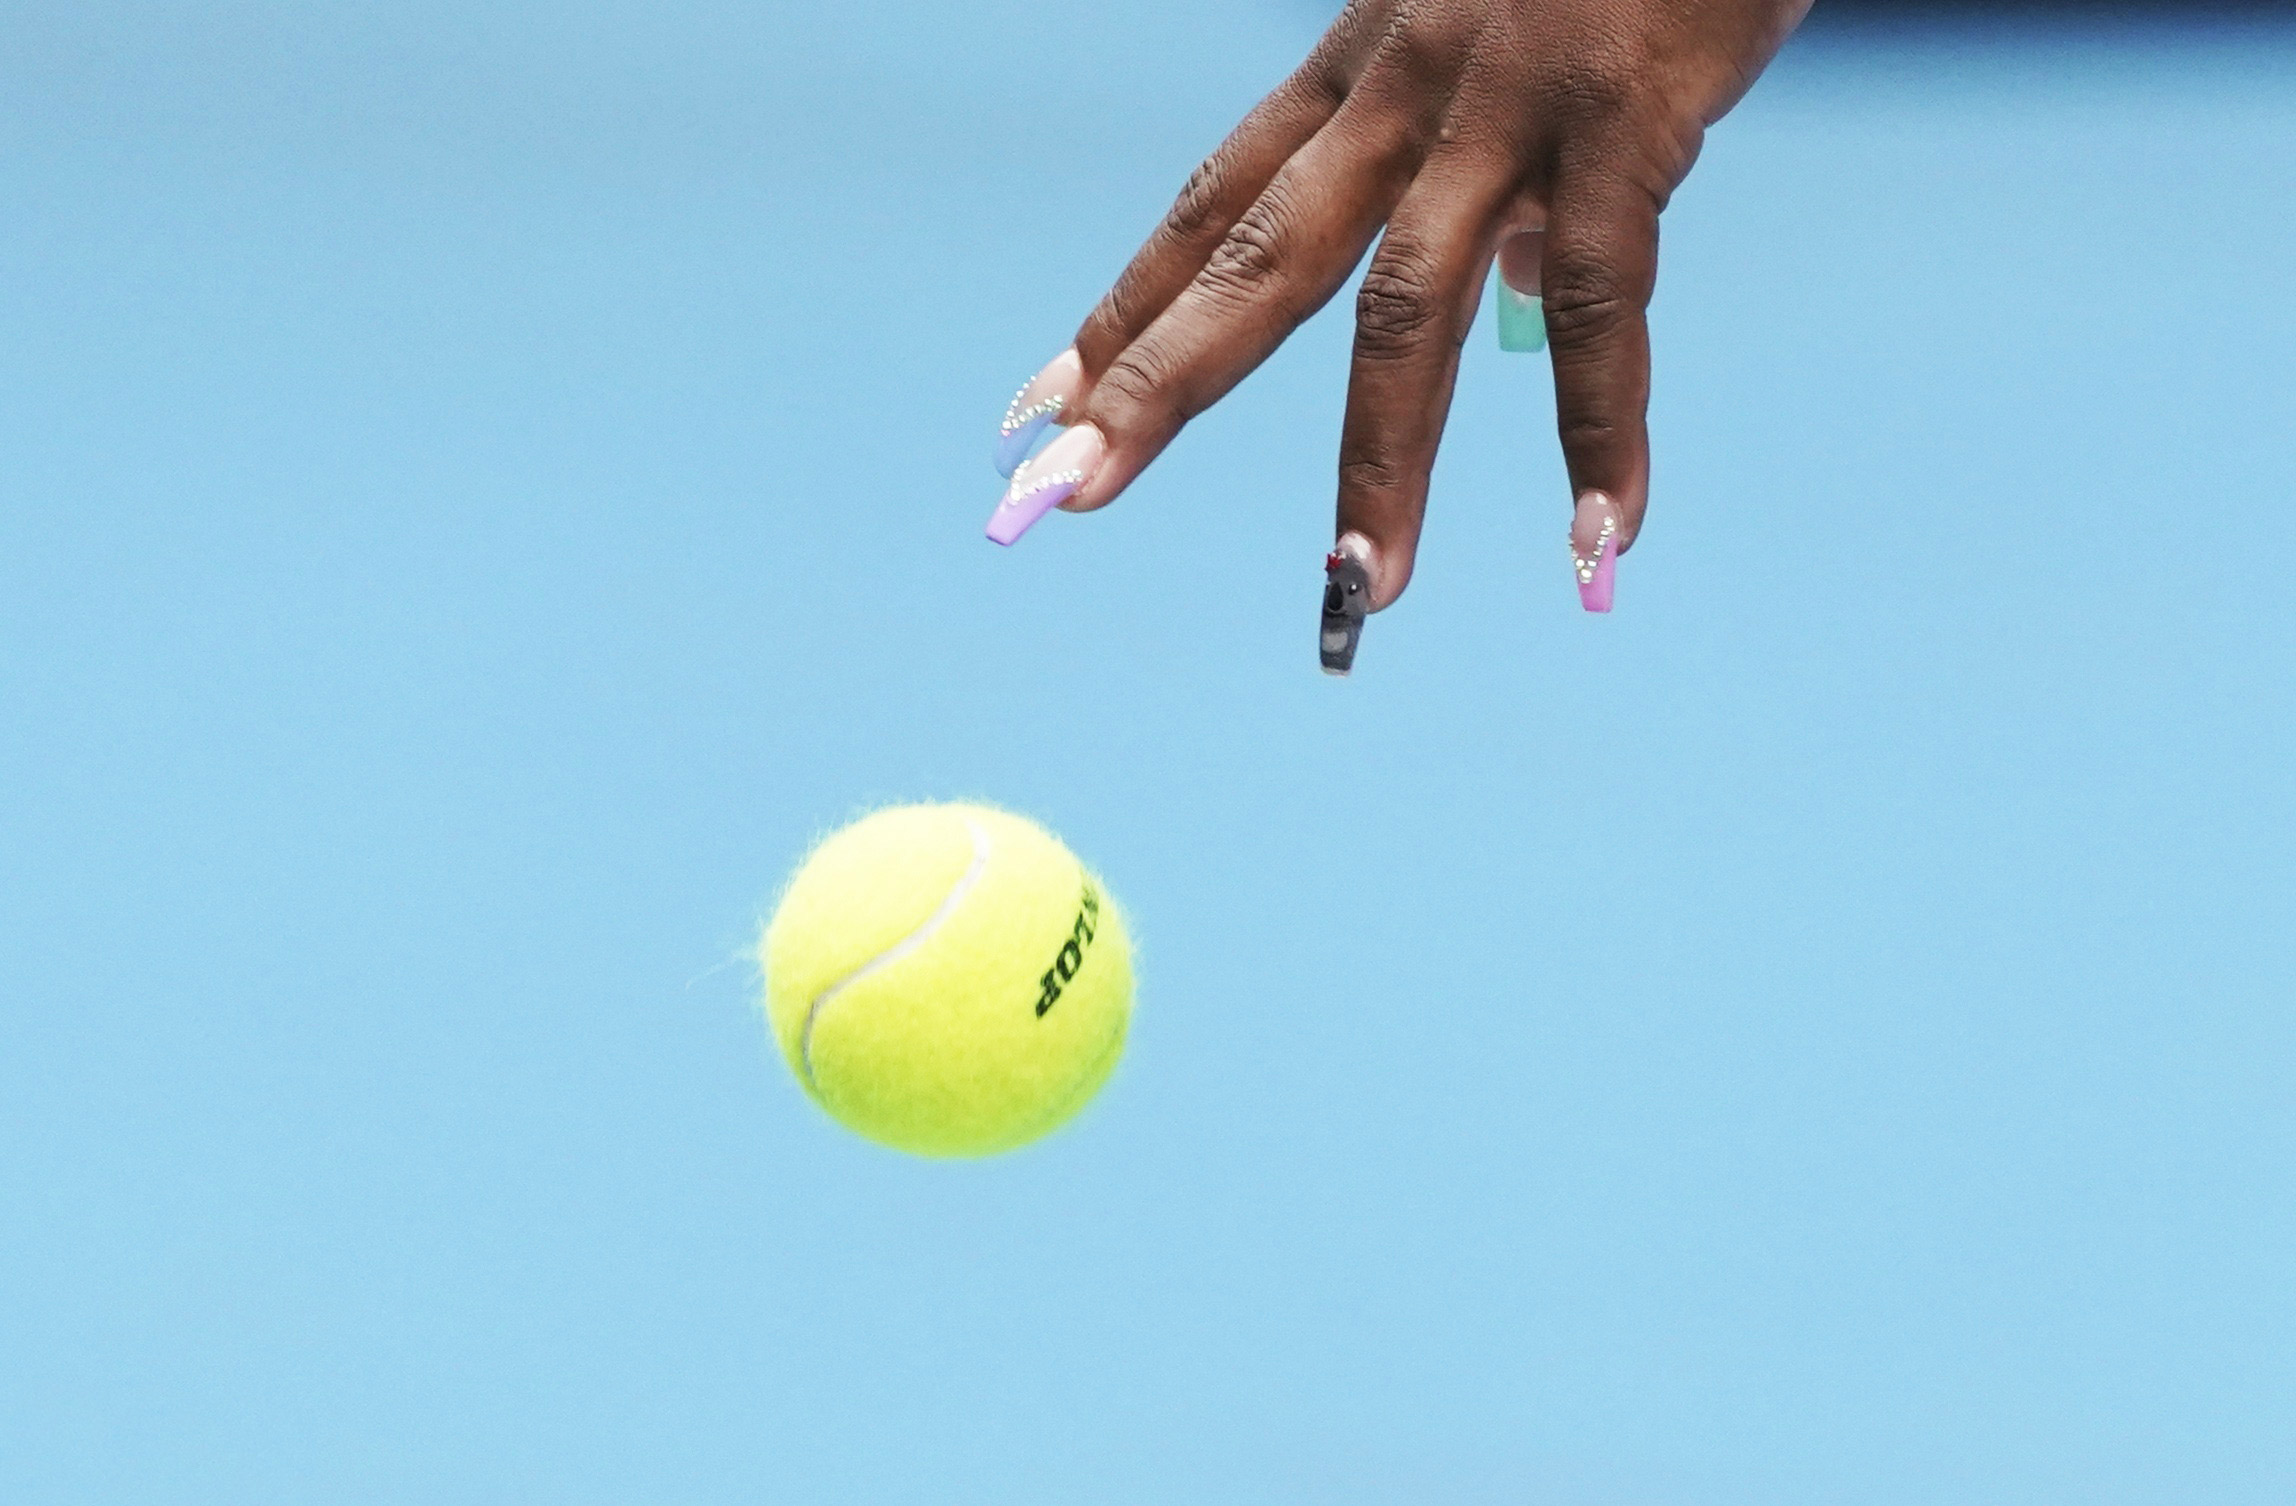 20 января: американская теннисистка Серена Уильямс во время первого круга матча с российской спортсменкой Анастасией Потаповой на Открытом чемпионате Австралии по теннису в Мельбурне.